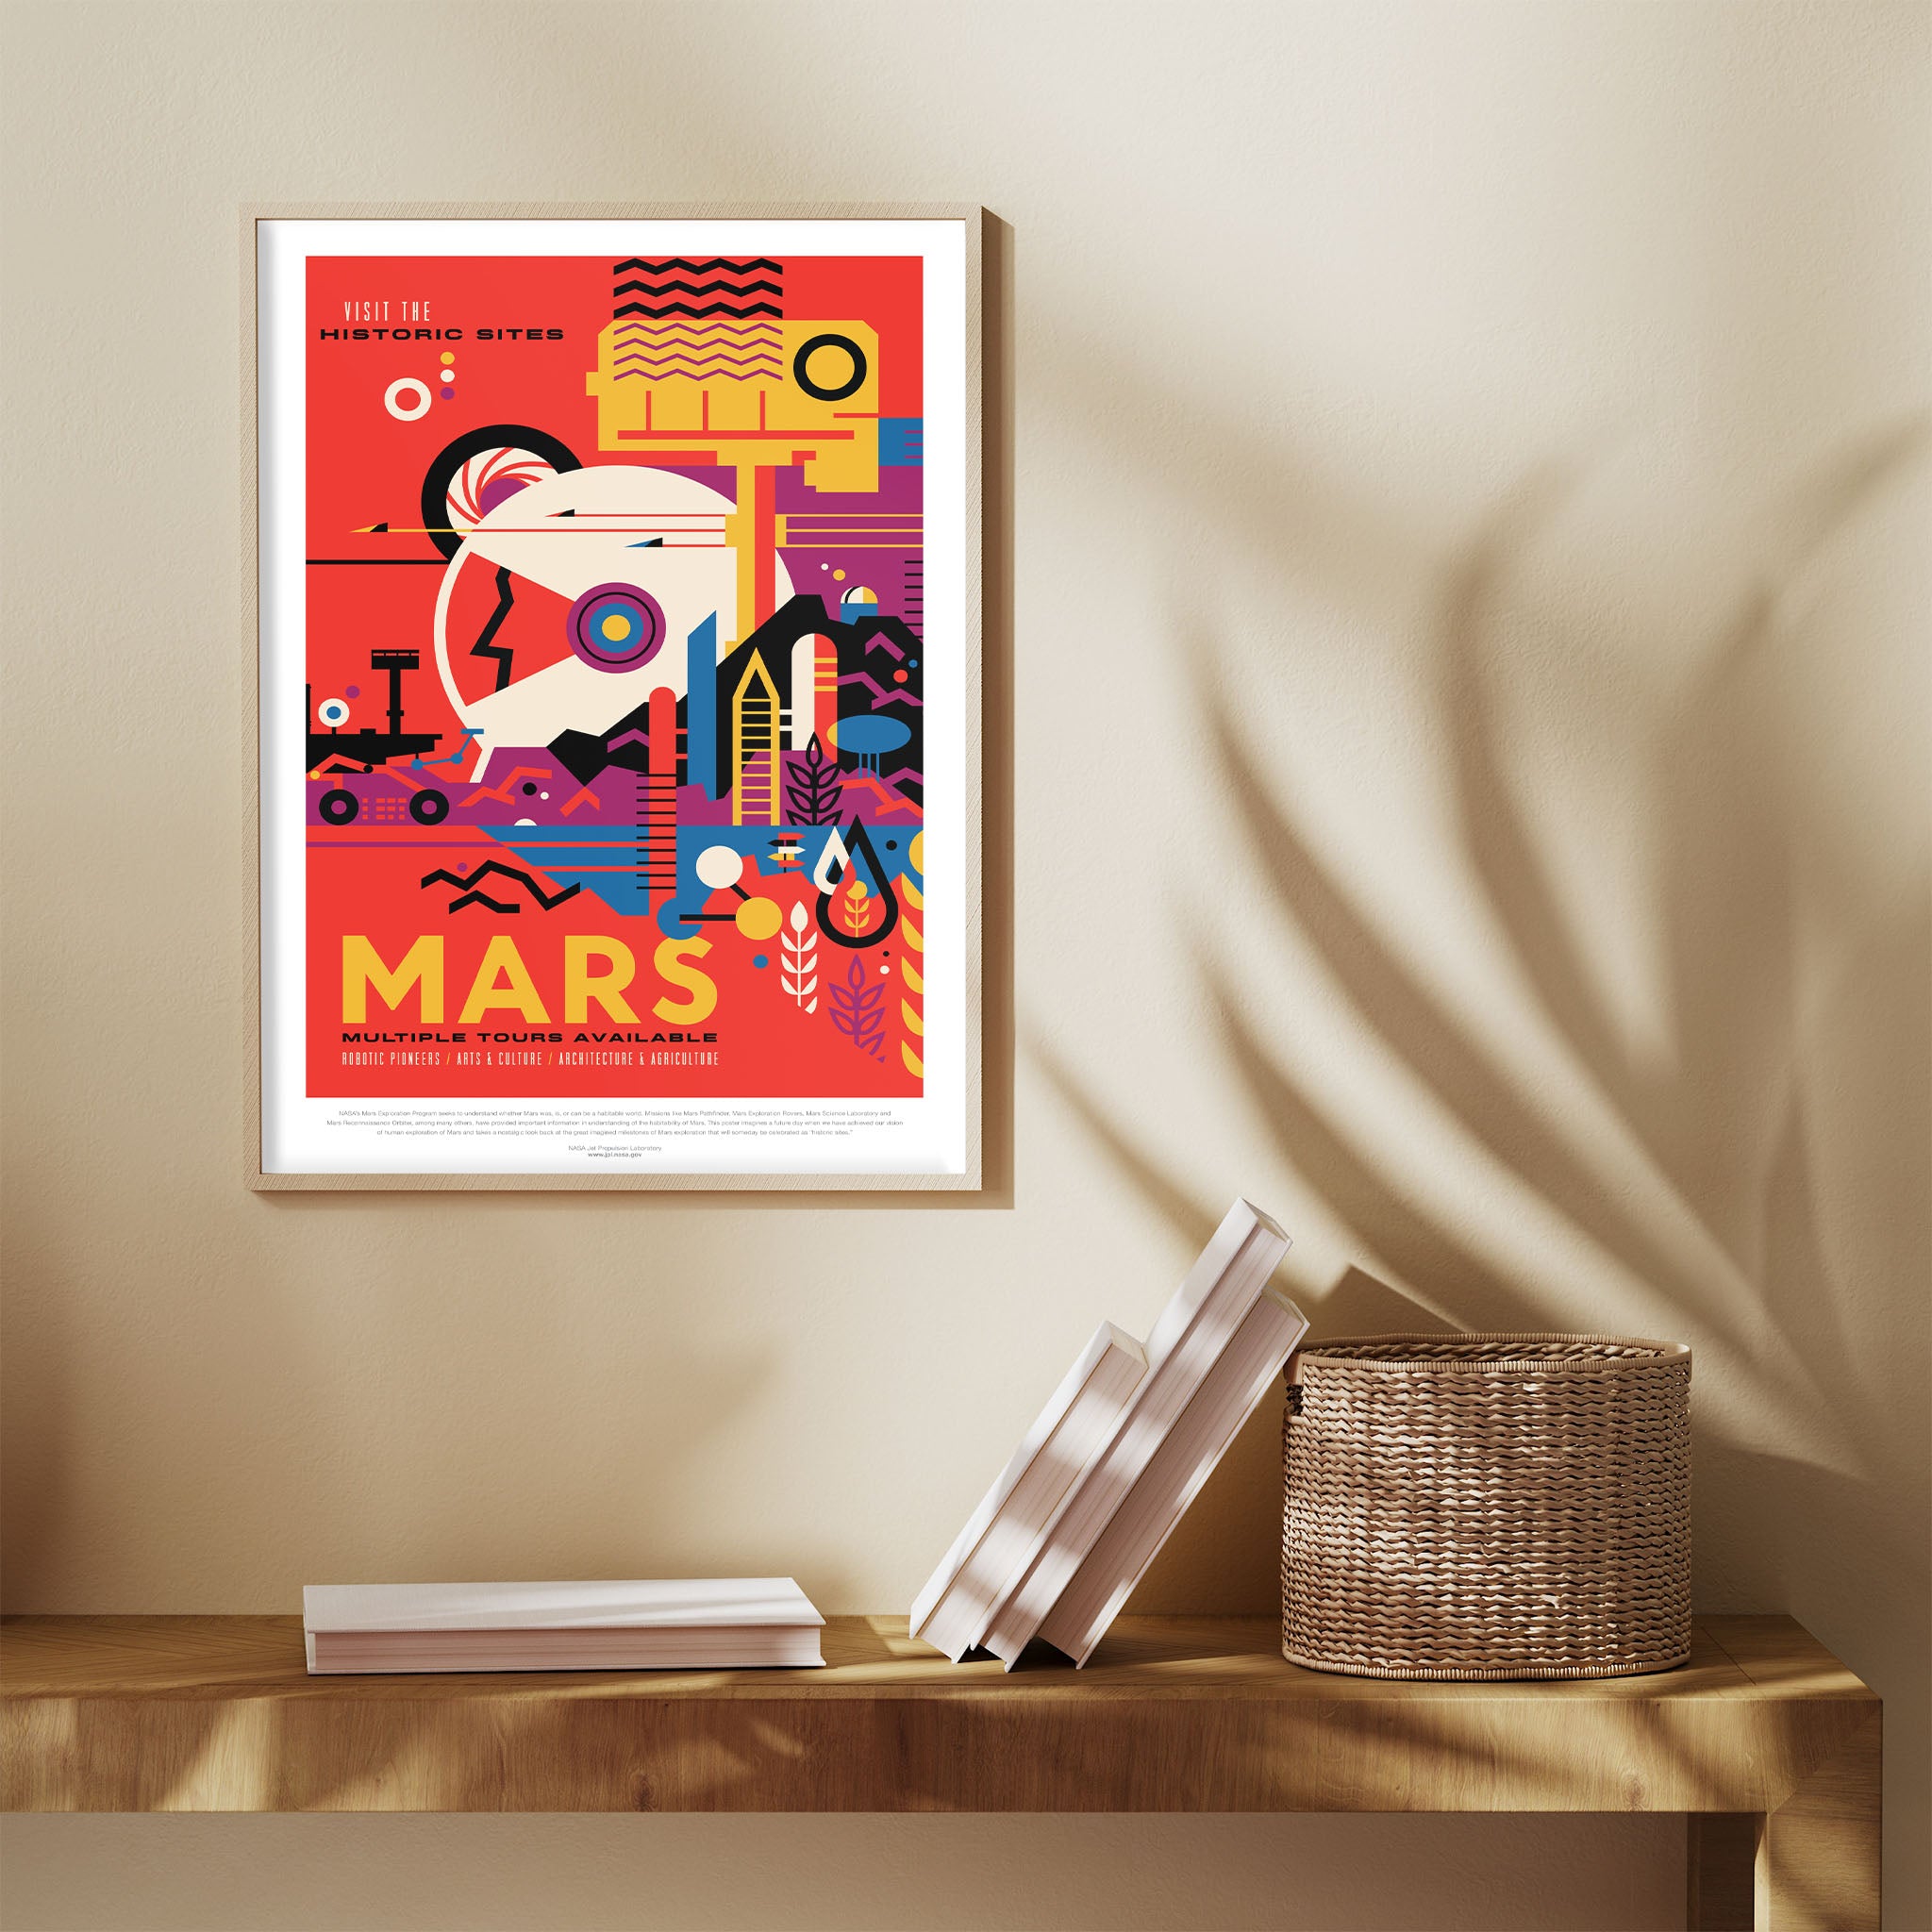 Mars - Visions of the Future Plakat NASA